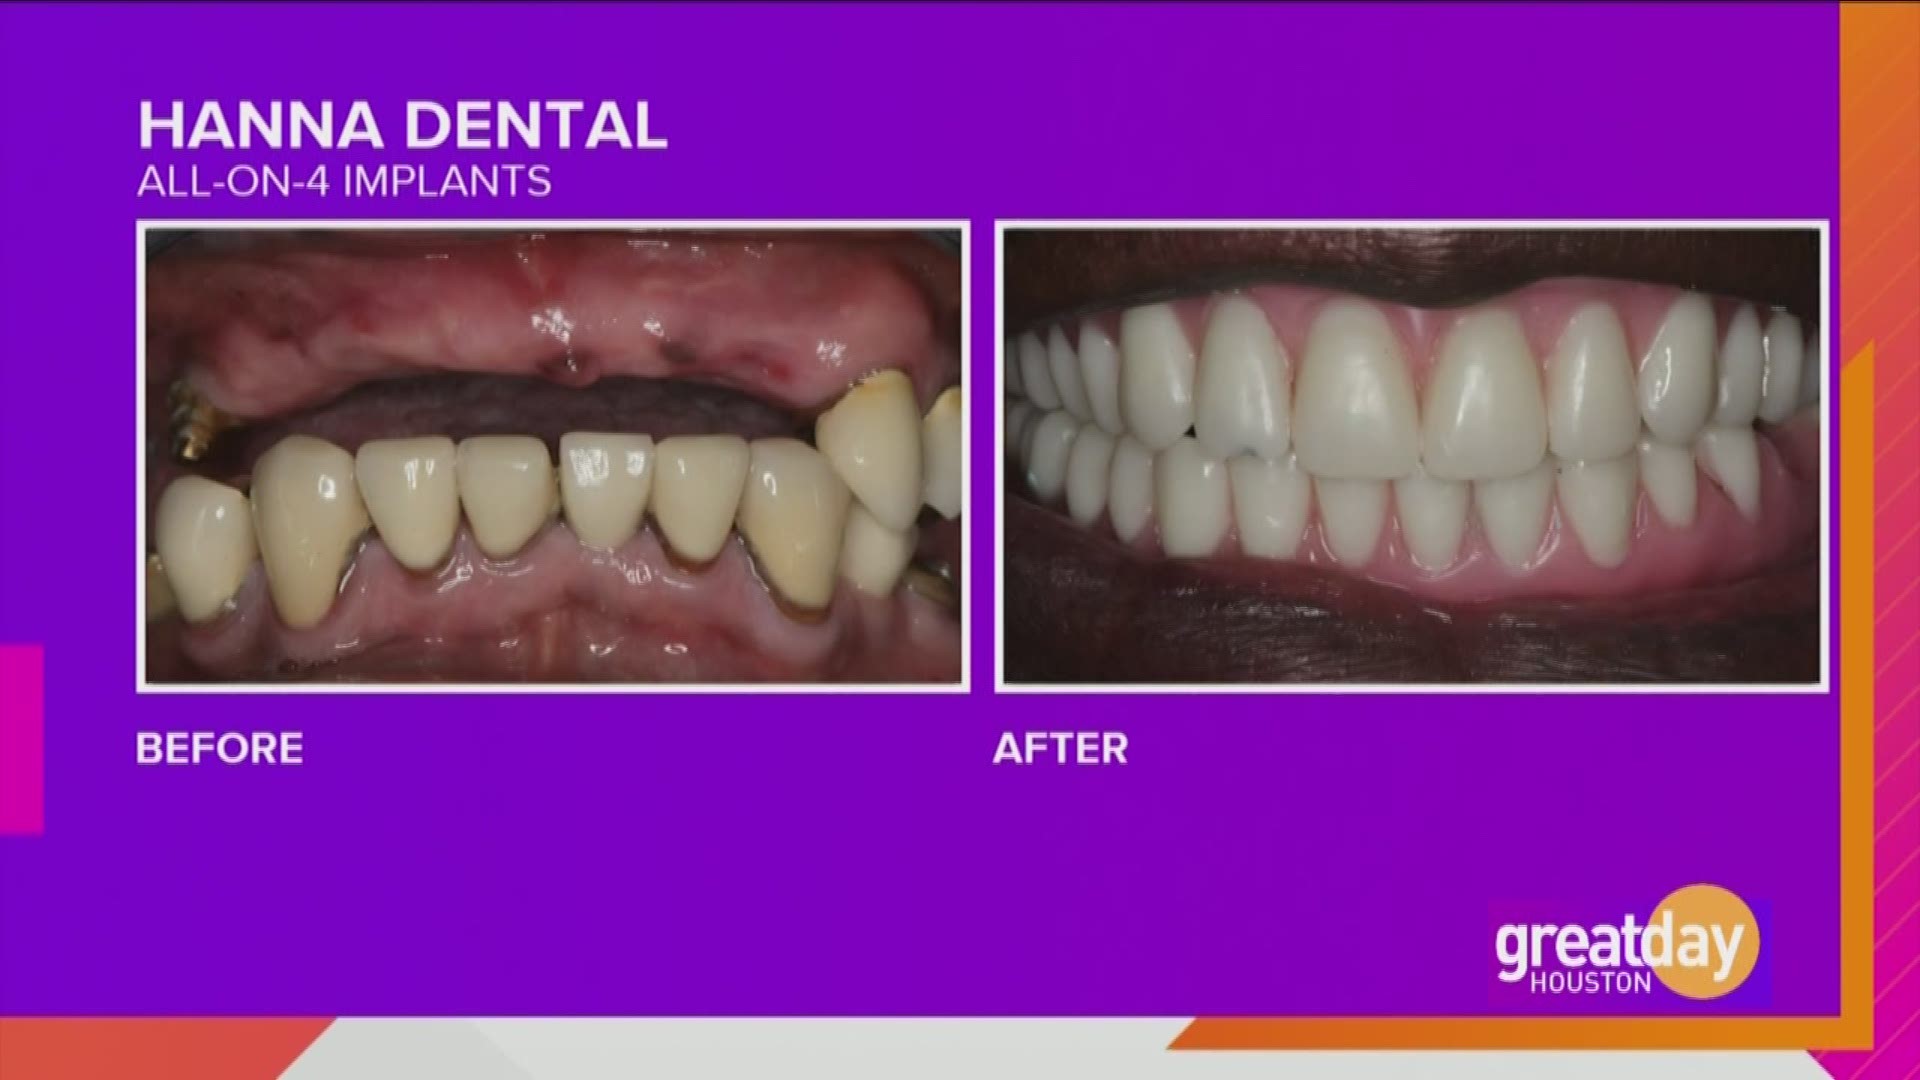 Hanna Dental Implant Center helped Cristina Martinez get her smile back